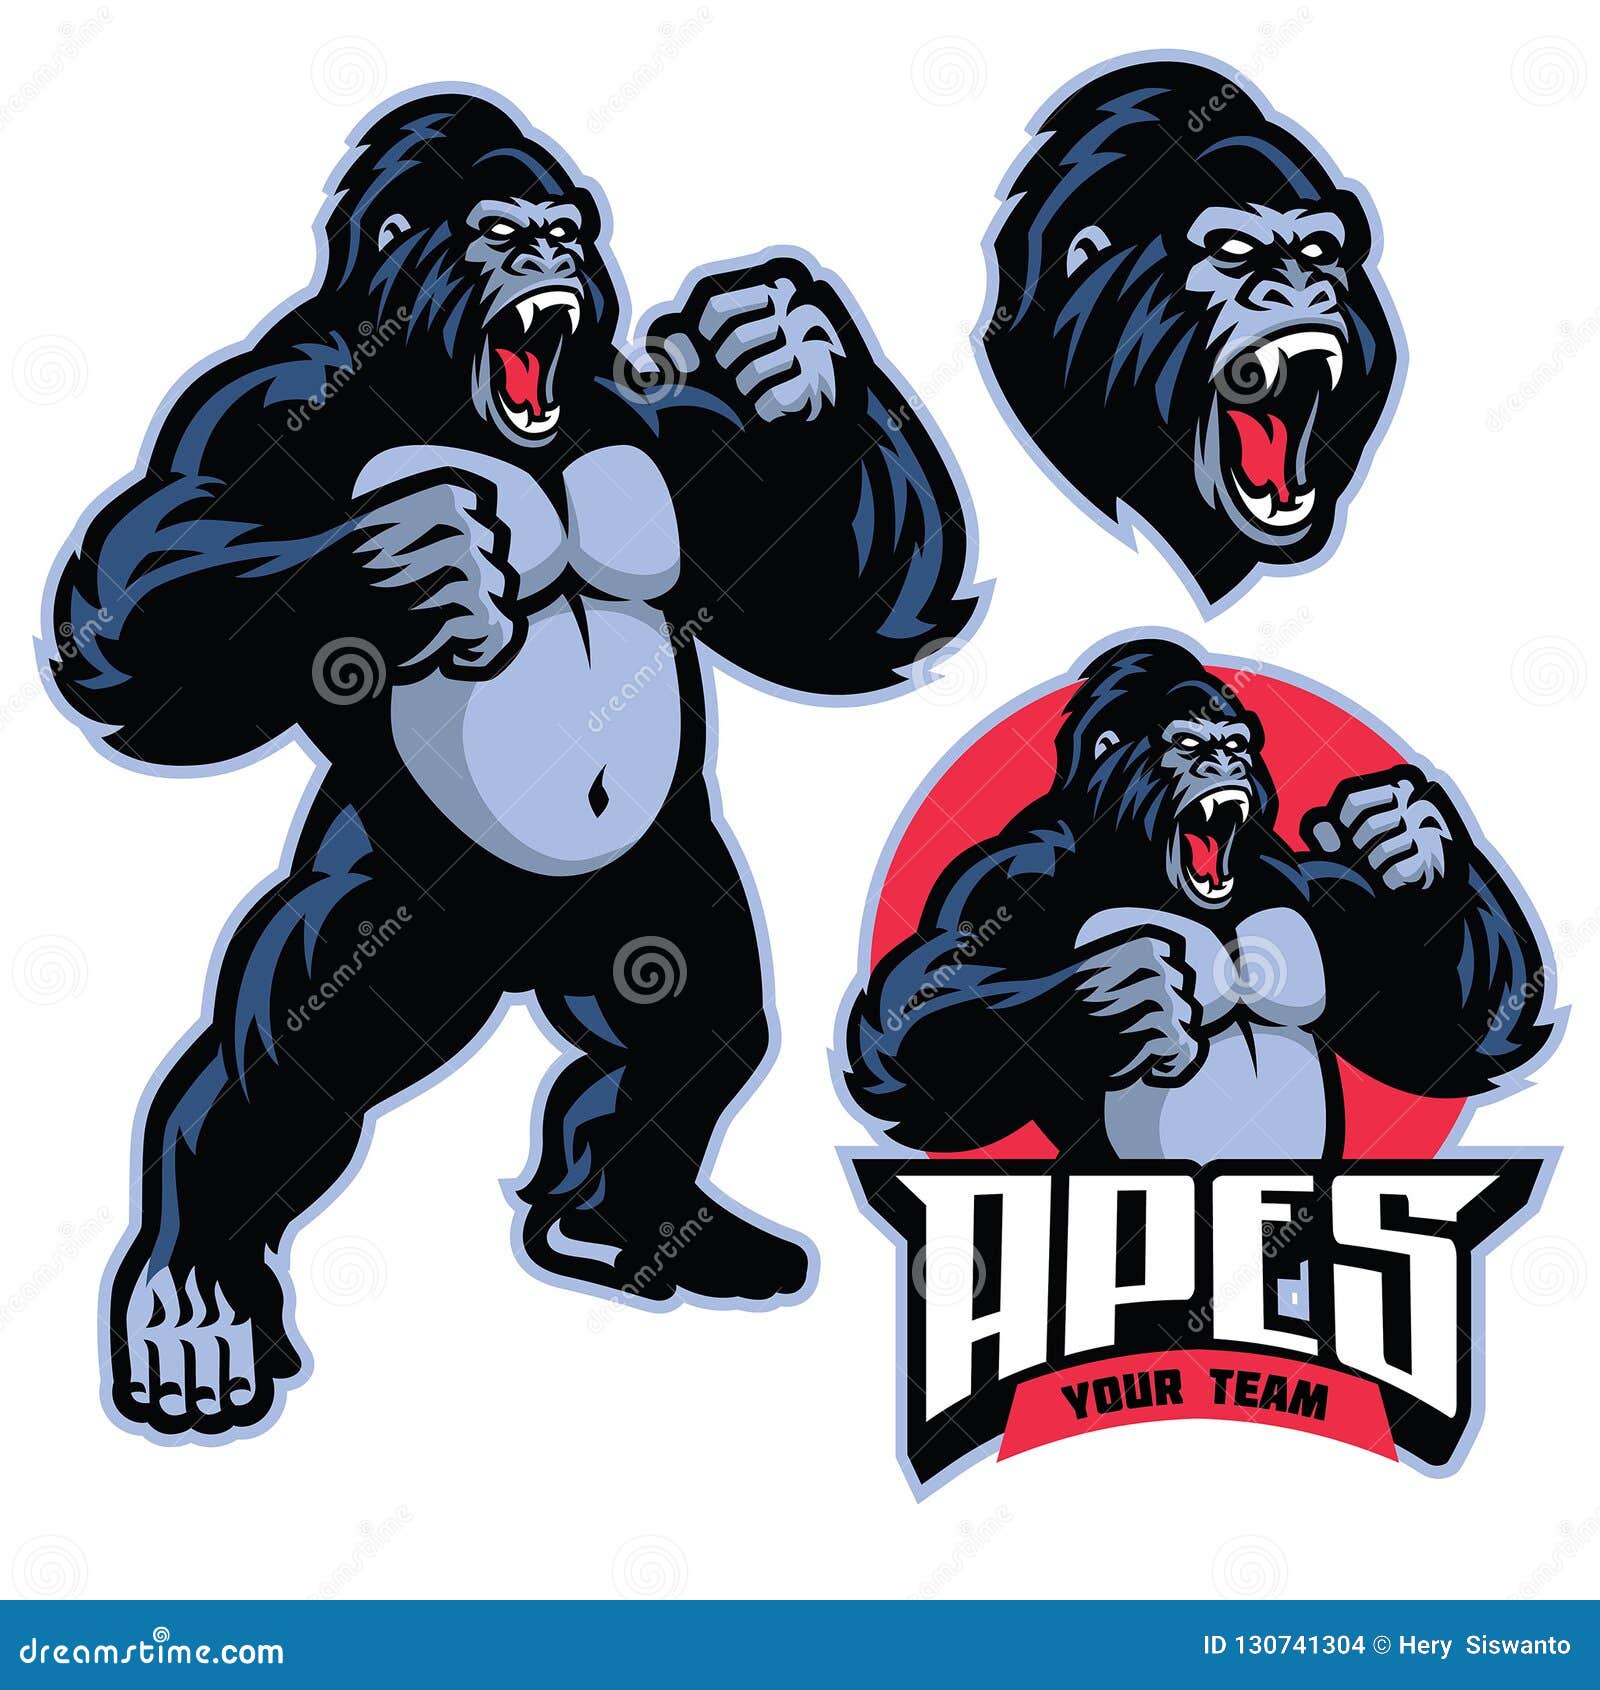 angry gorilla mascot standing